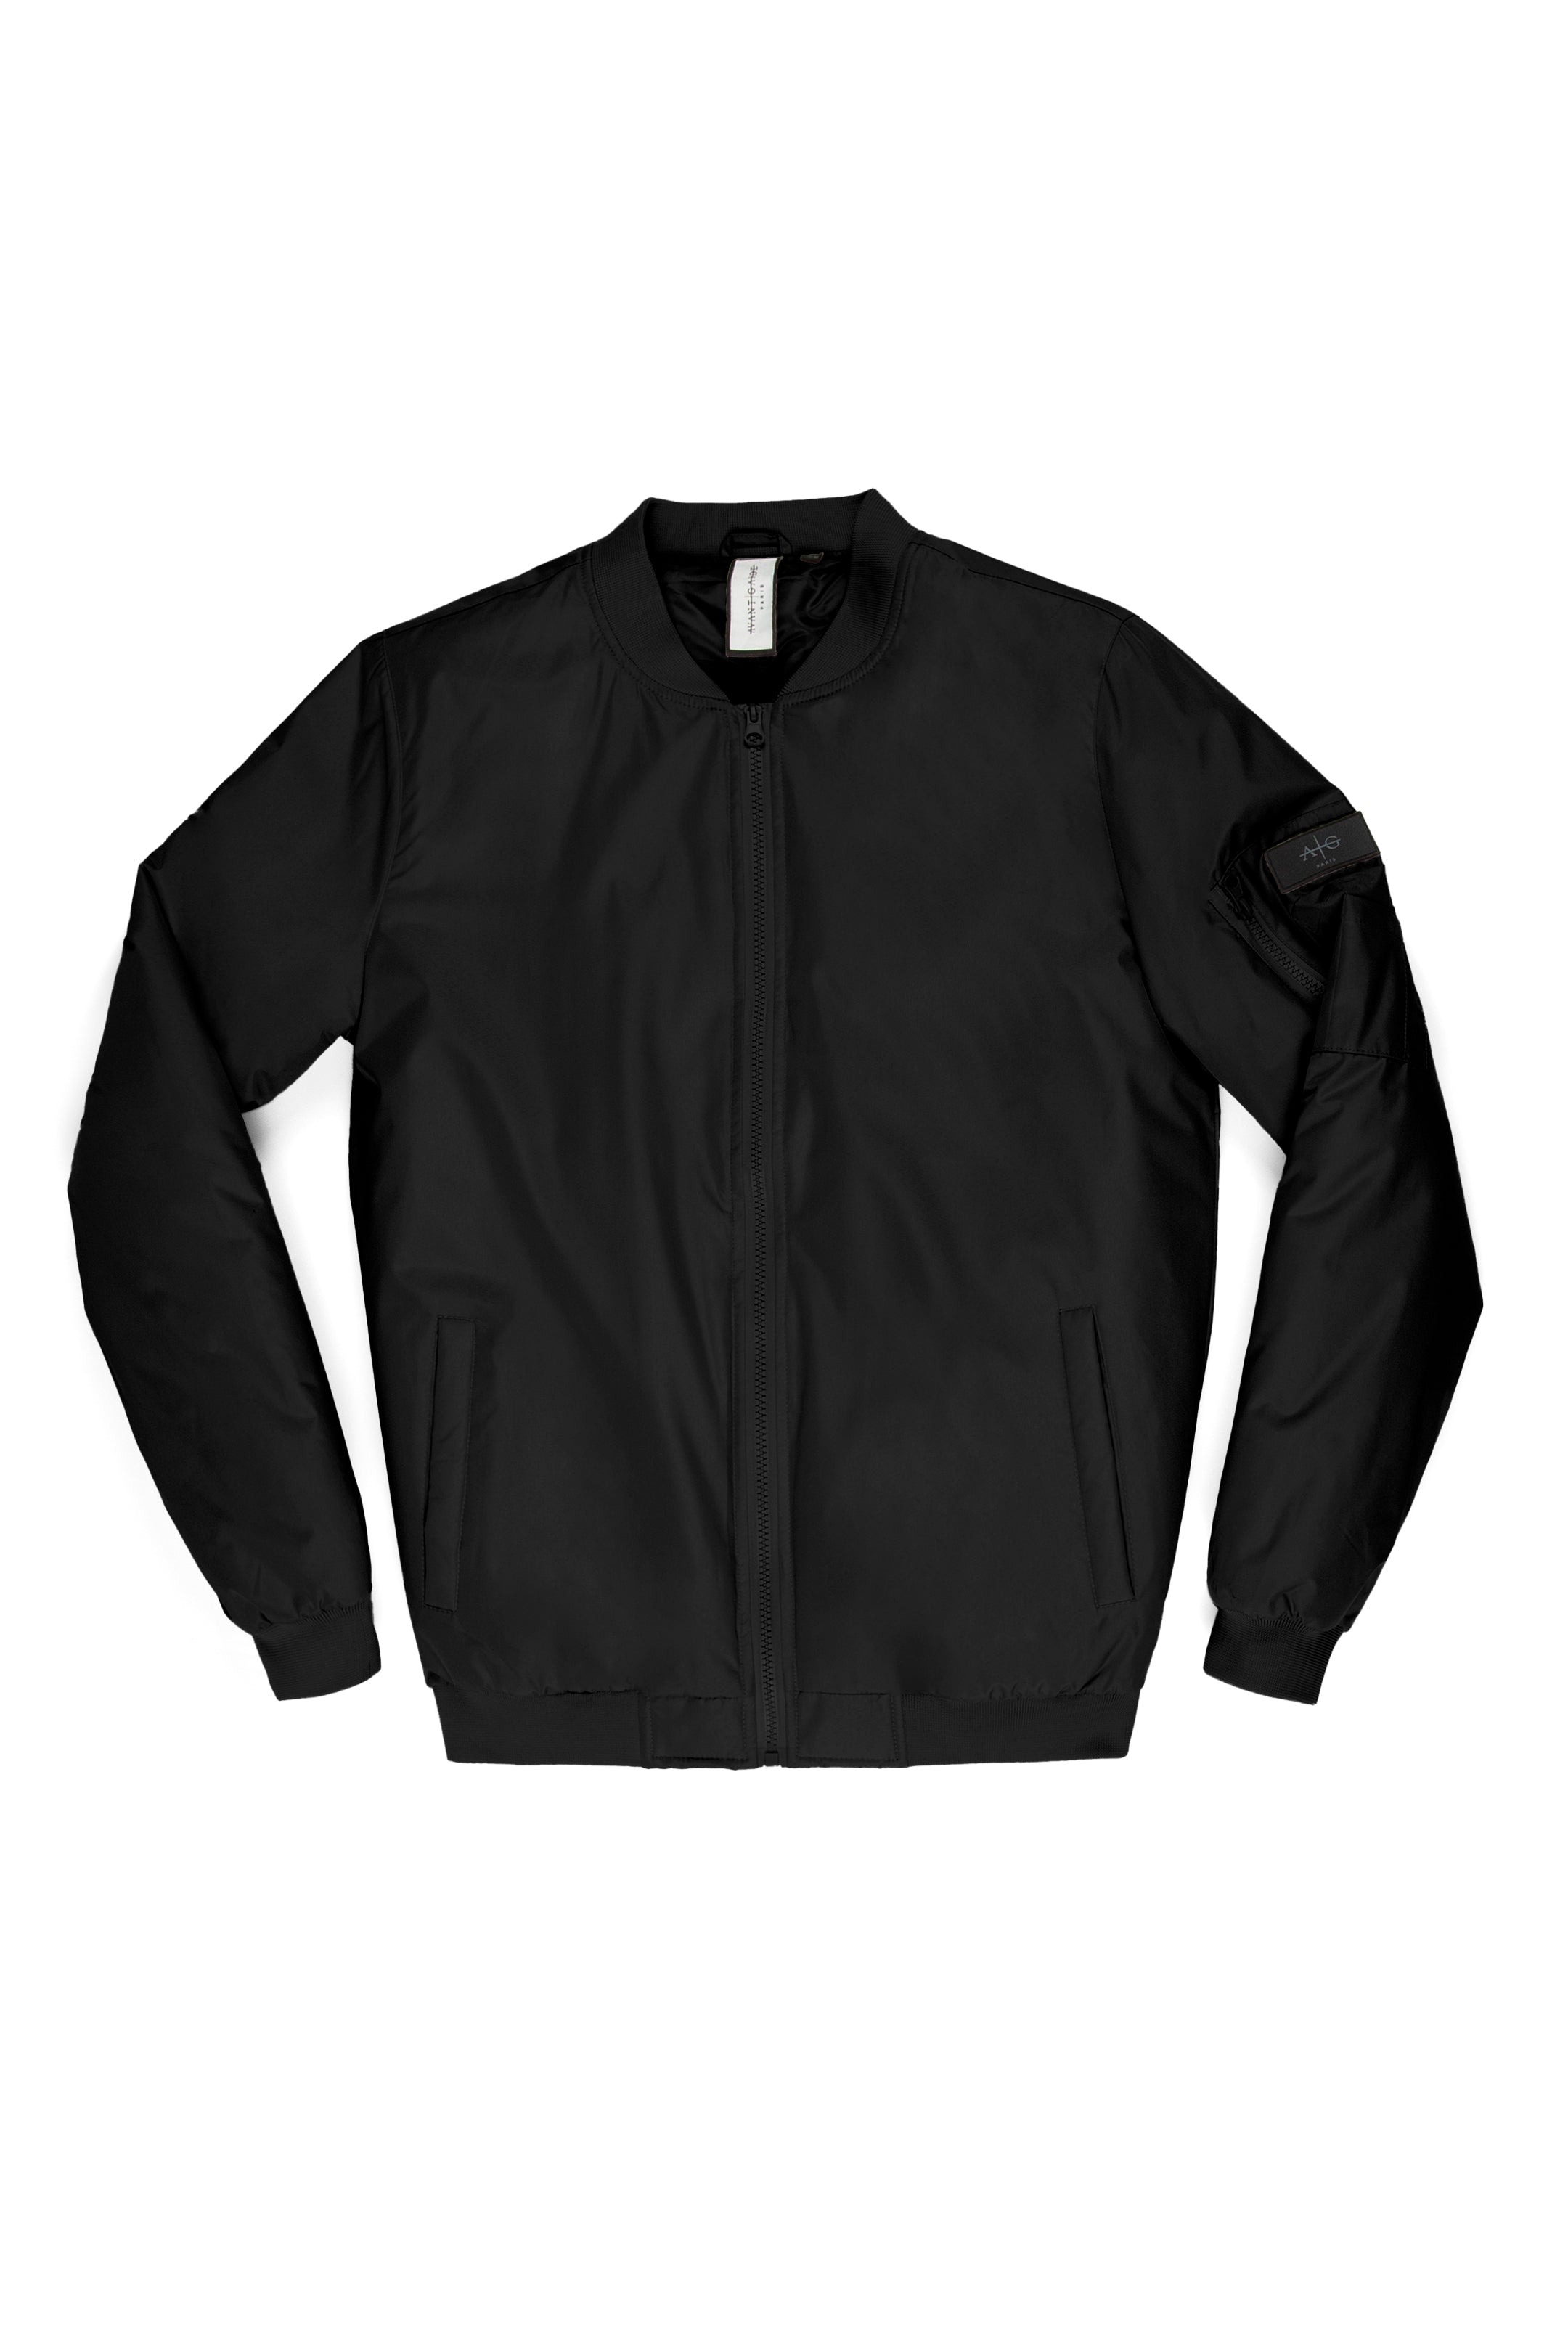 Black Gold Men's Bomber Jacket – AmbiVirile Menswear